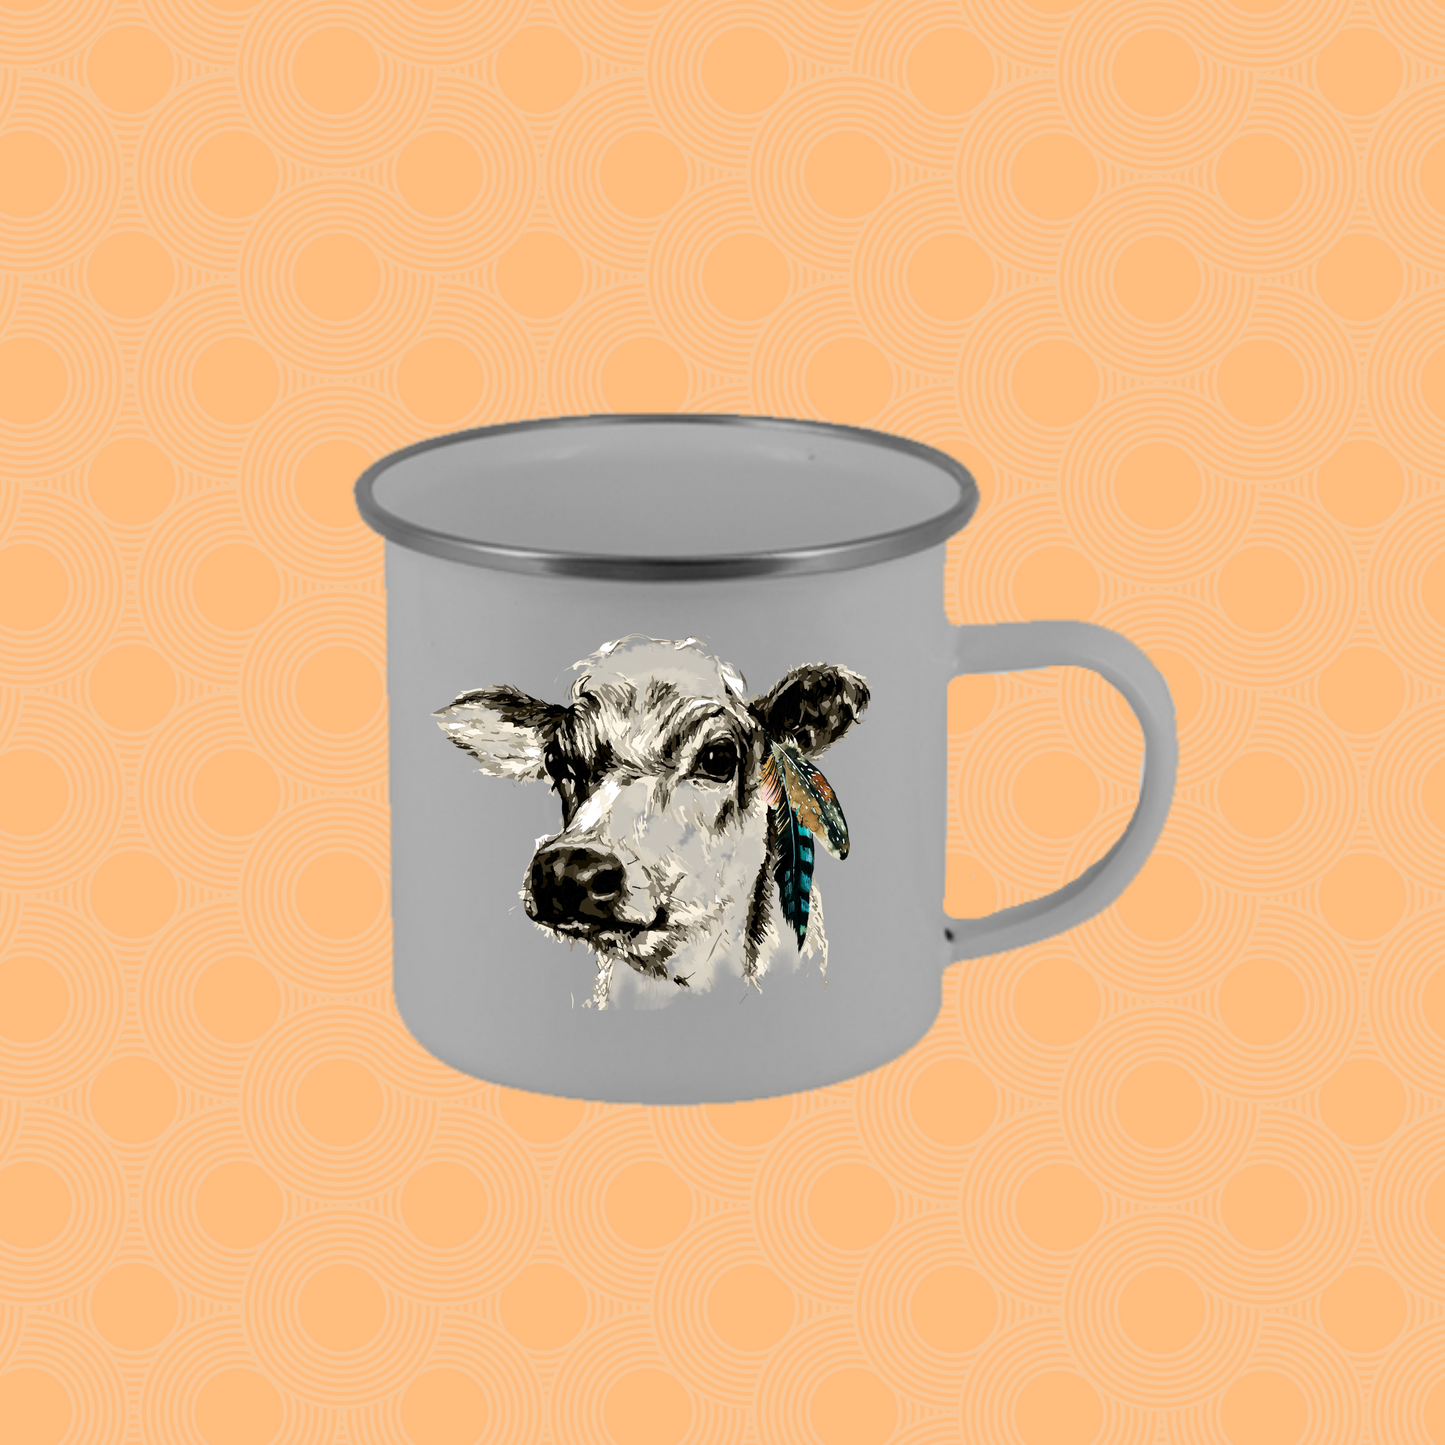 Mug/Cup - Heifer with Feathers Camp Mug